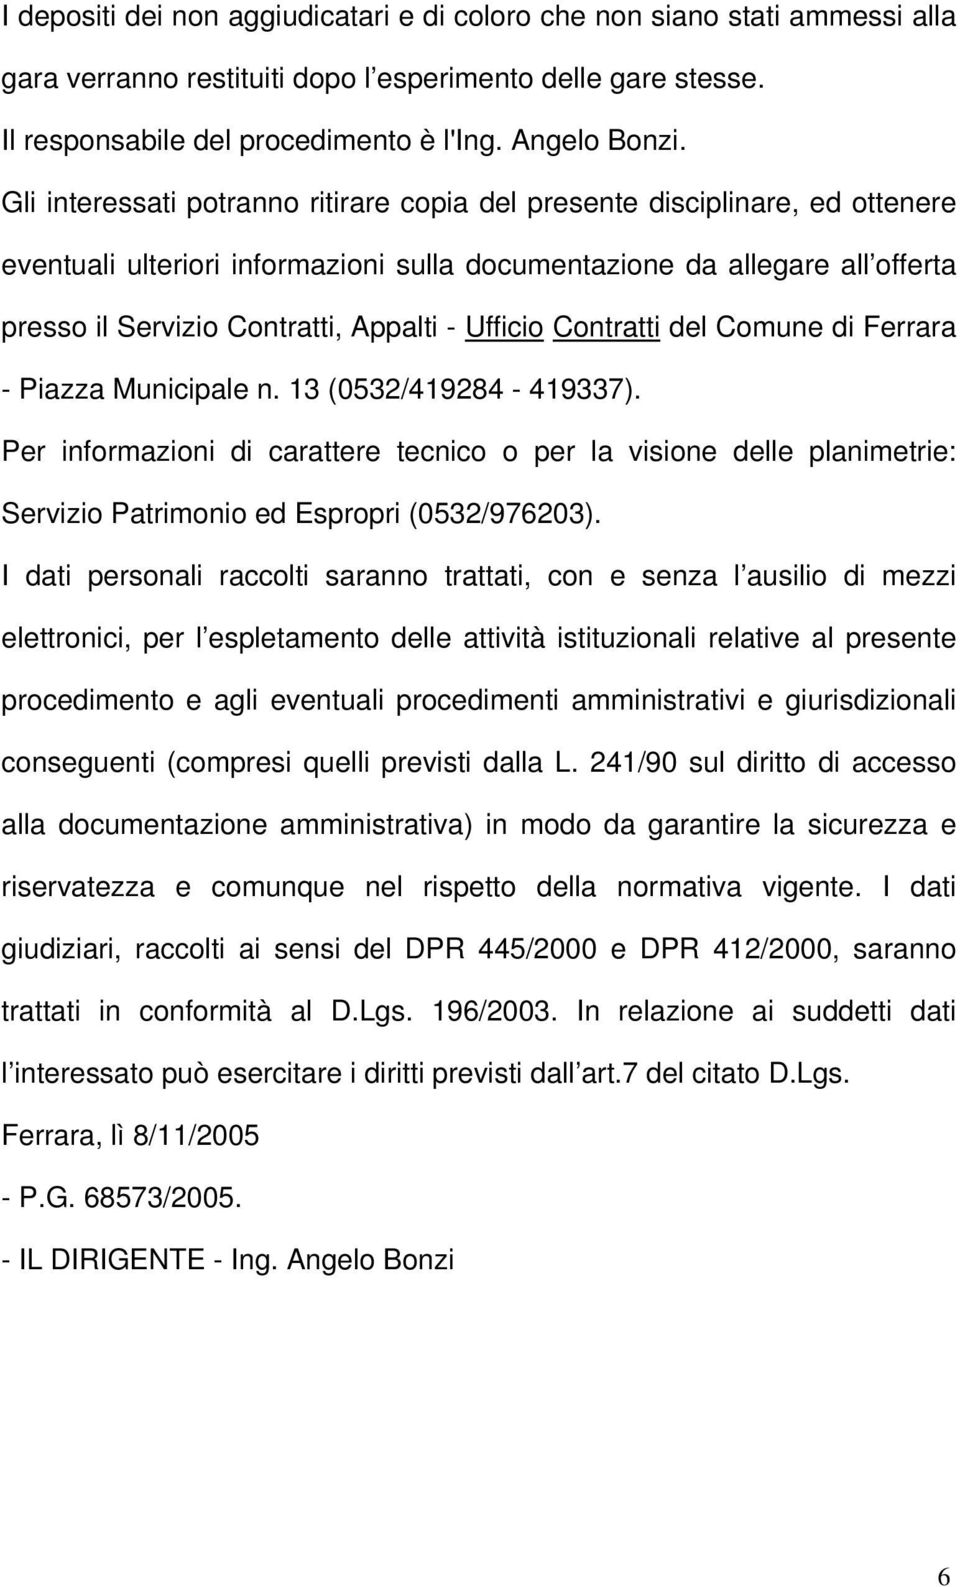 Ufficio Contratti del Comune di Ferrara - Piazza Municipale n. 13 (0532/419284-419337).